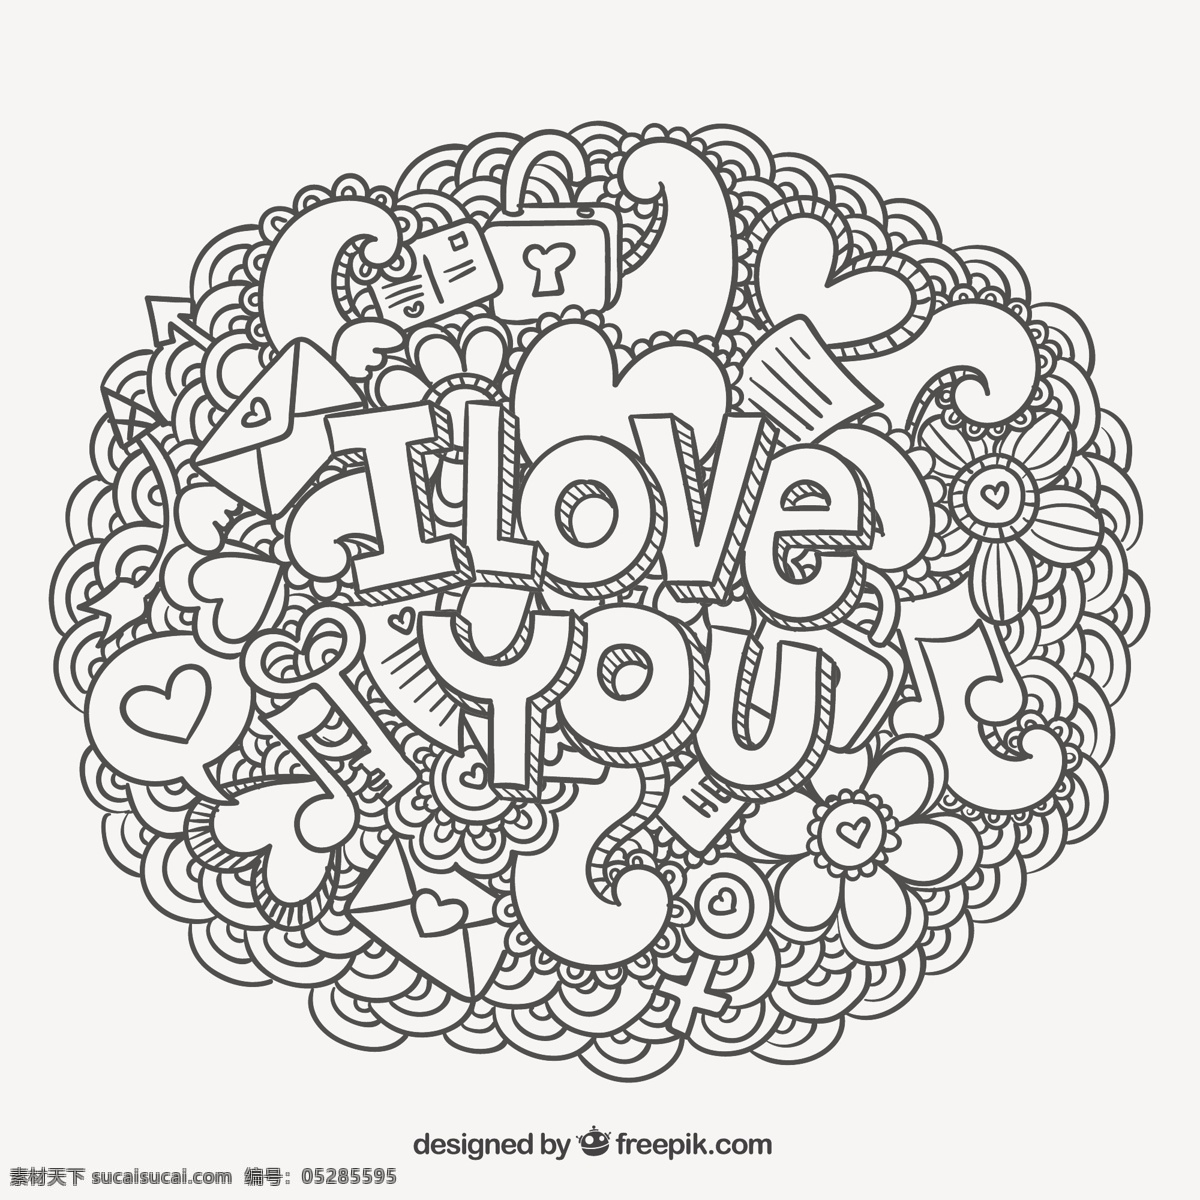 我爱你 讯息 涂鸦 爱情方面 印刷 手绘 情人节饰品 情人节 留言 浪漫 刻字 天 画的涂鸦 白色